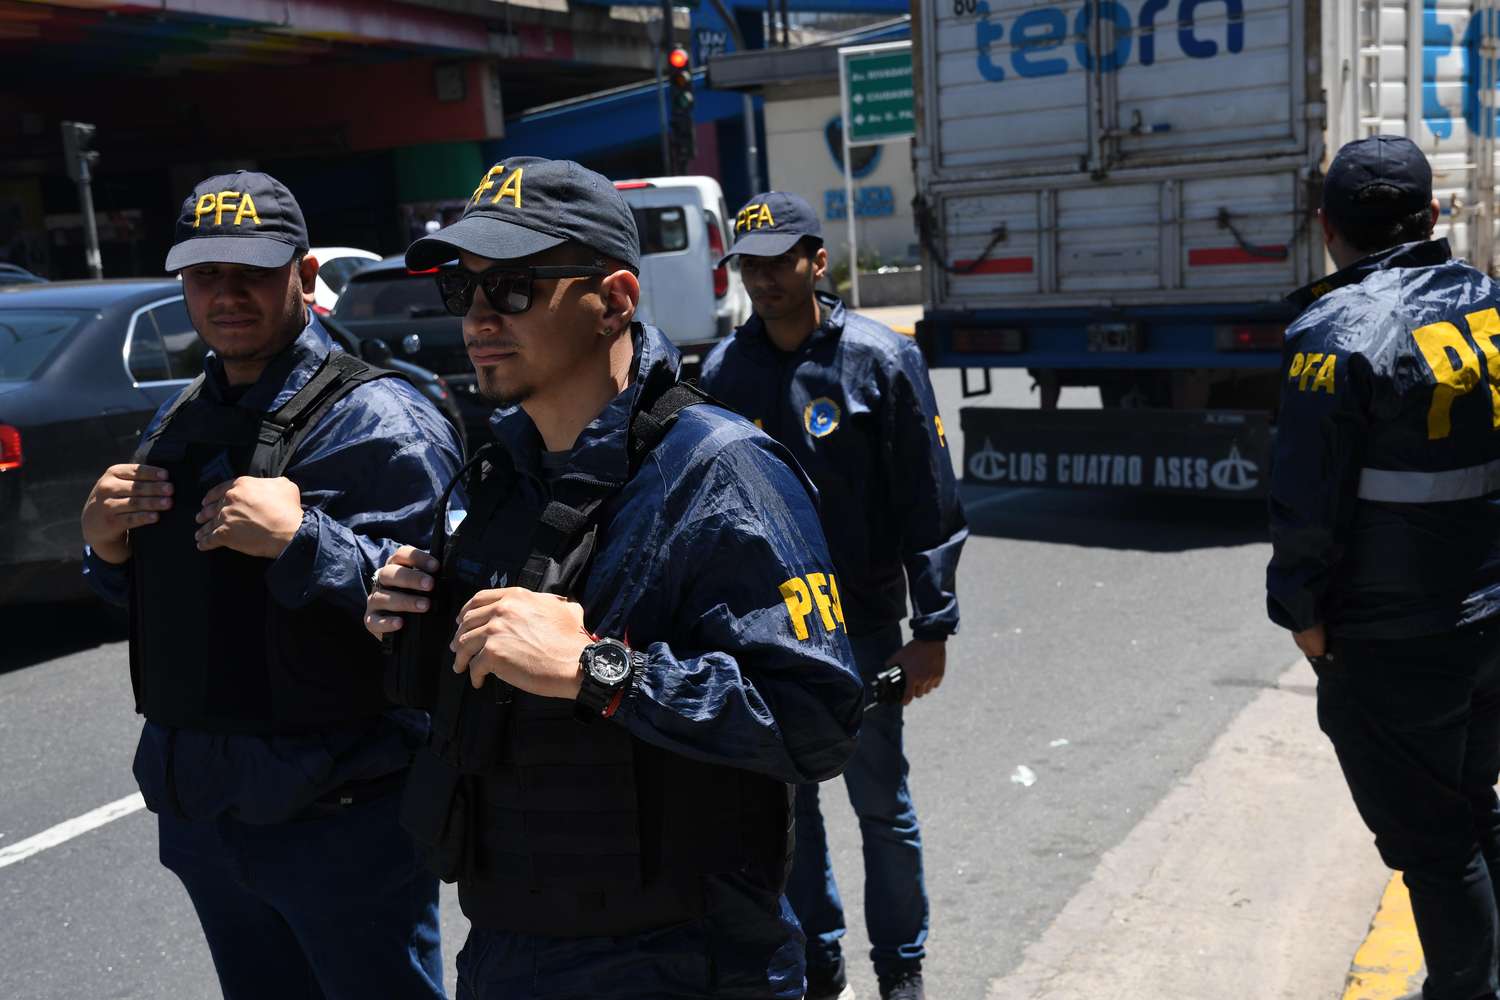 El protocolo de orden público contempla la acción de la policía ante protestas sin orden judicial